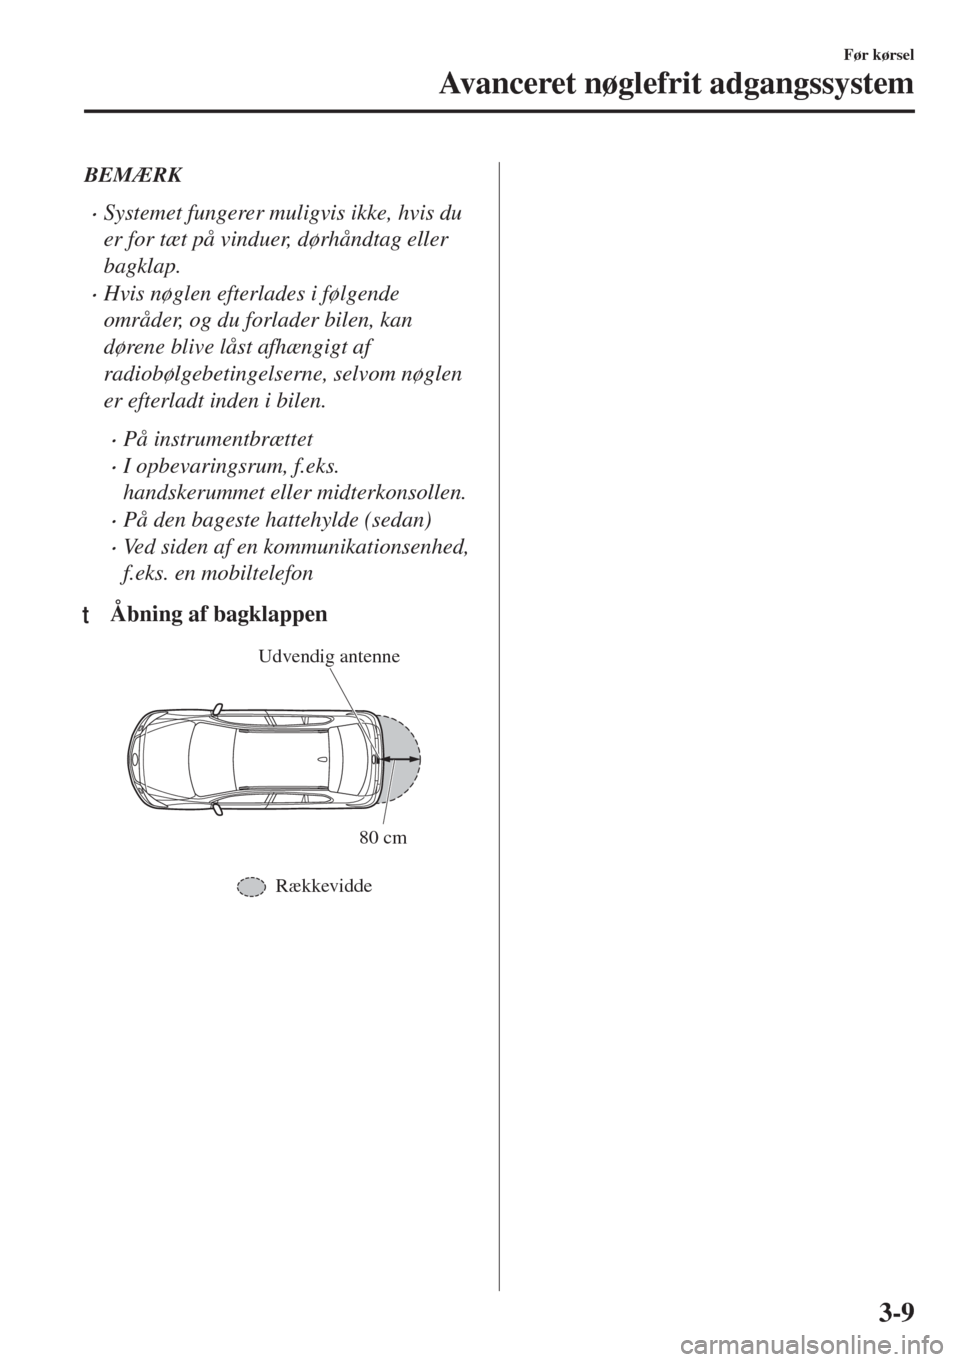 MAZDA MODEL 6 2018  Instruktionsbog (in Danish) BEMÆRK
•Systemet fungerer muligvis ikke, hvis du
er for tæt på vinduer, dørhåndtag eller
bagklap.
•Hvis nøglen efterlades i følgende
områder, og du forlader bilen, kan
dørene blive låst 